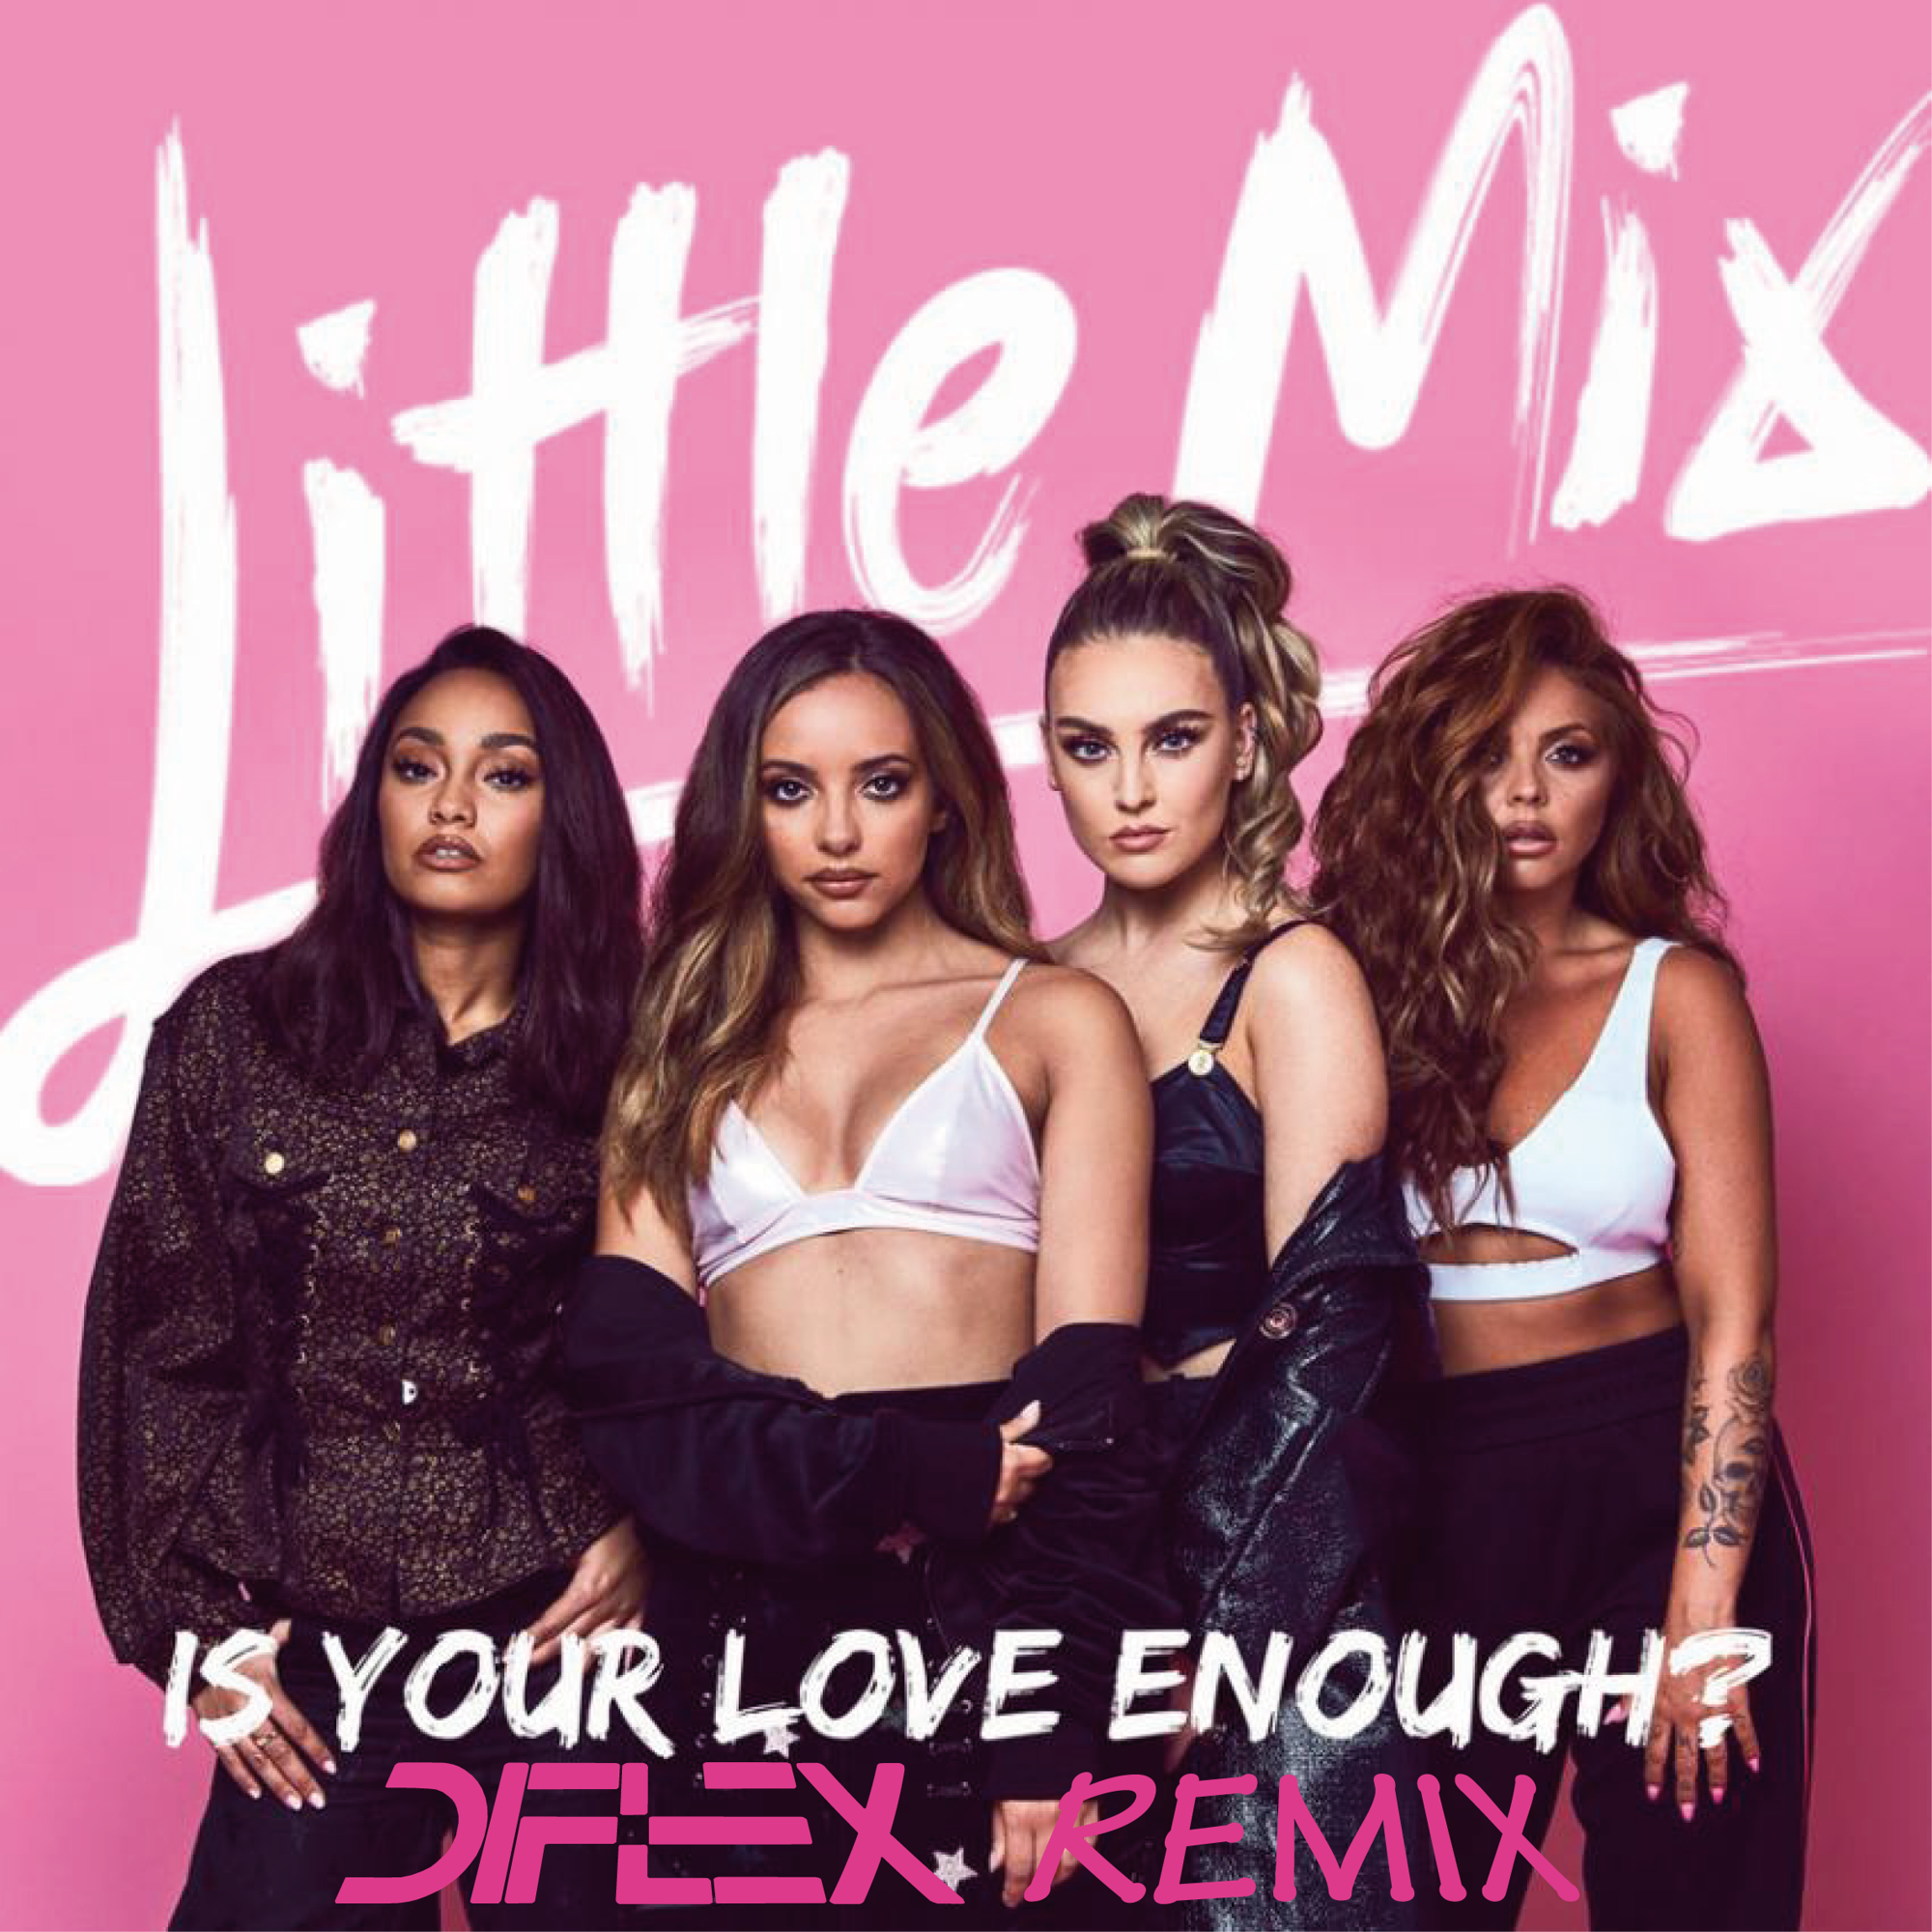 Твои лове песня. Little Mix is your Love enough. Is your Love enough little Mix обложка. Little Mix - your Love. Обложки песен little Mix.